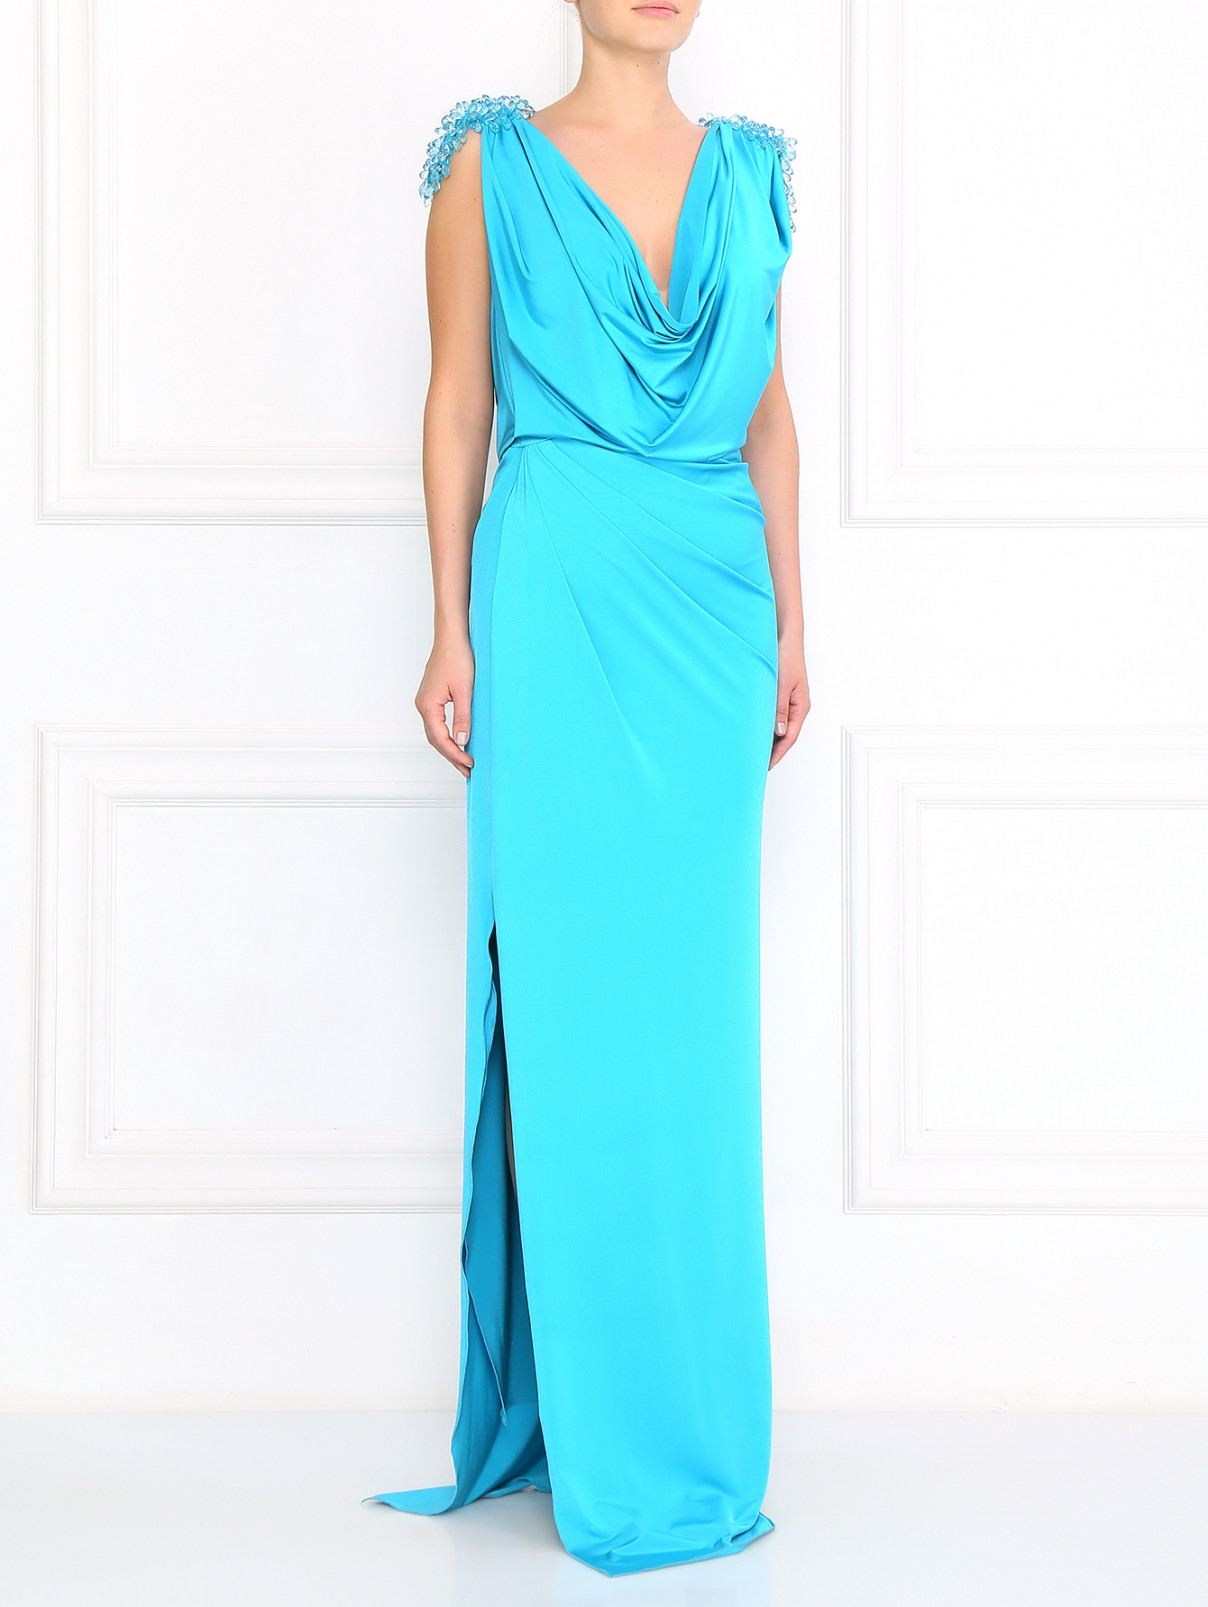 Платье-макси декорированное камнями VELOUDAKIS  –  Модель Общий вид  – Цвет:  Синий